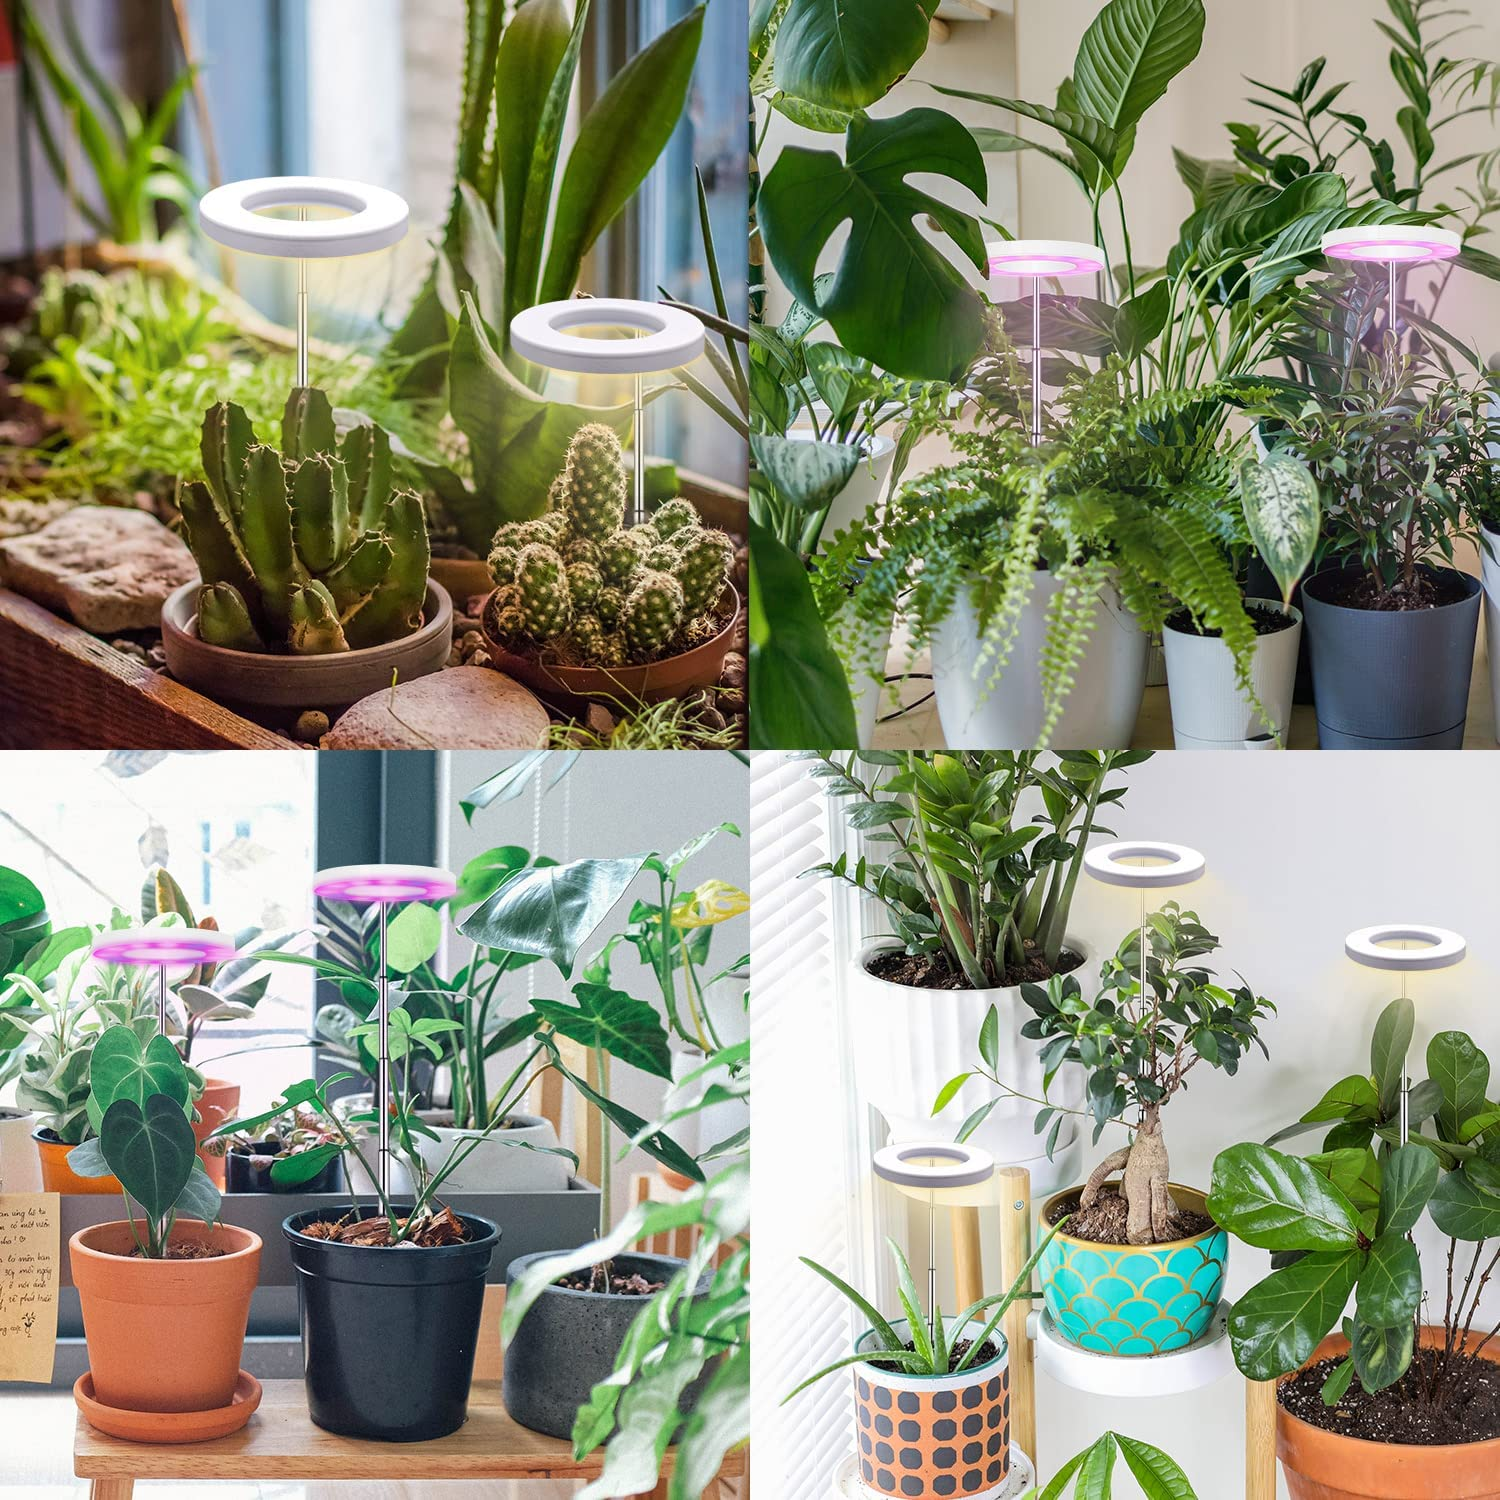 INF Kulturlampe Pflanzenlampe für warmweiß/weiß Pflanzenbeleuchtung Topfpflanzen